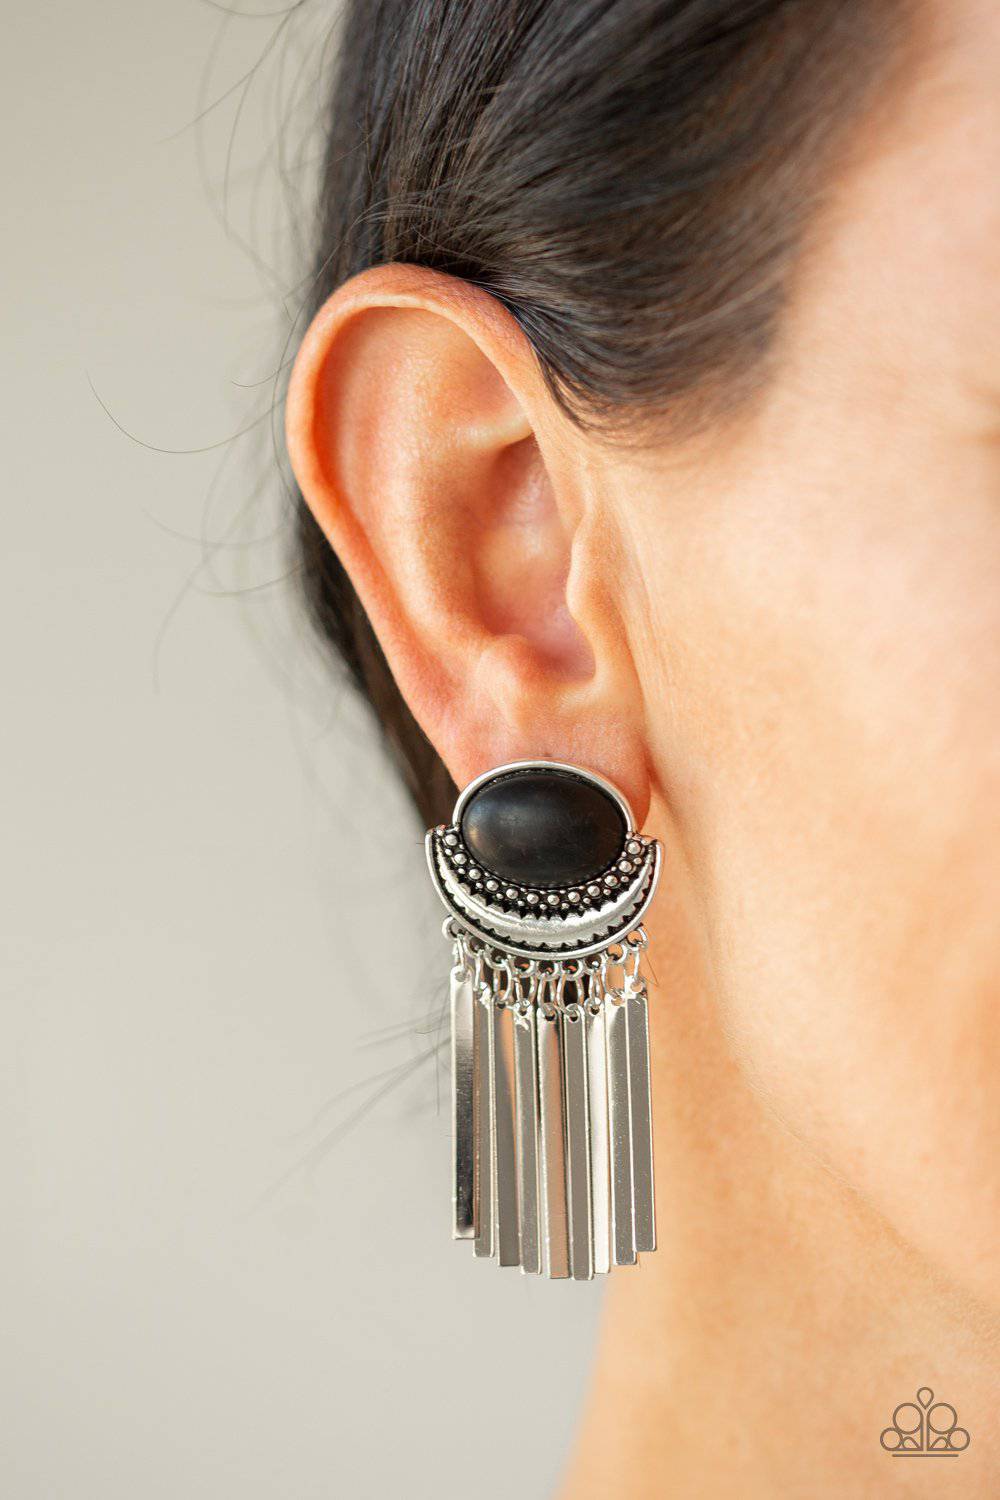 D193 - Monsoon Season Black Earrings by Paparazzi Accessories on Fancy5Fashion.com